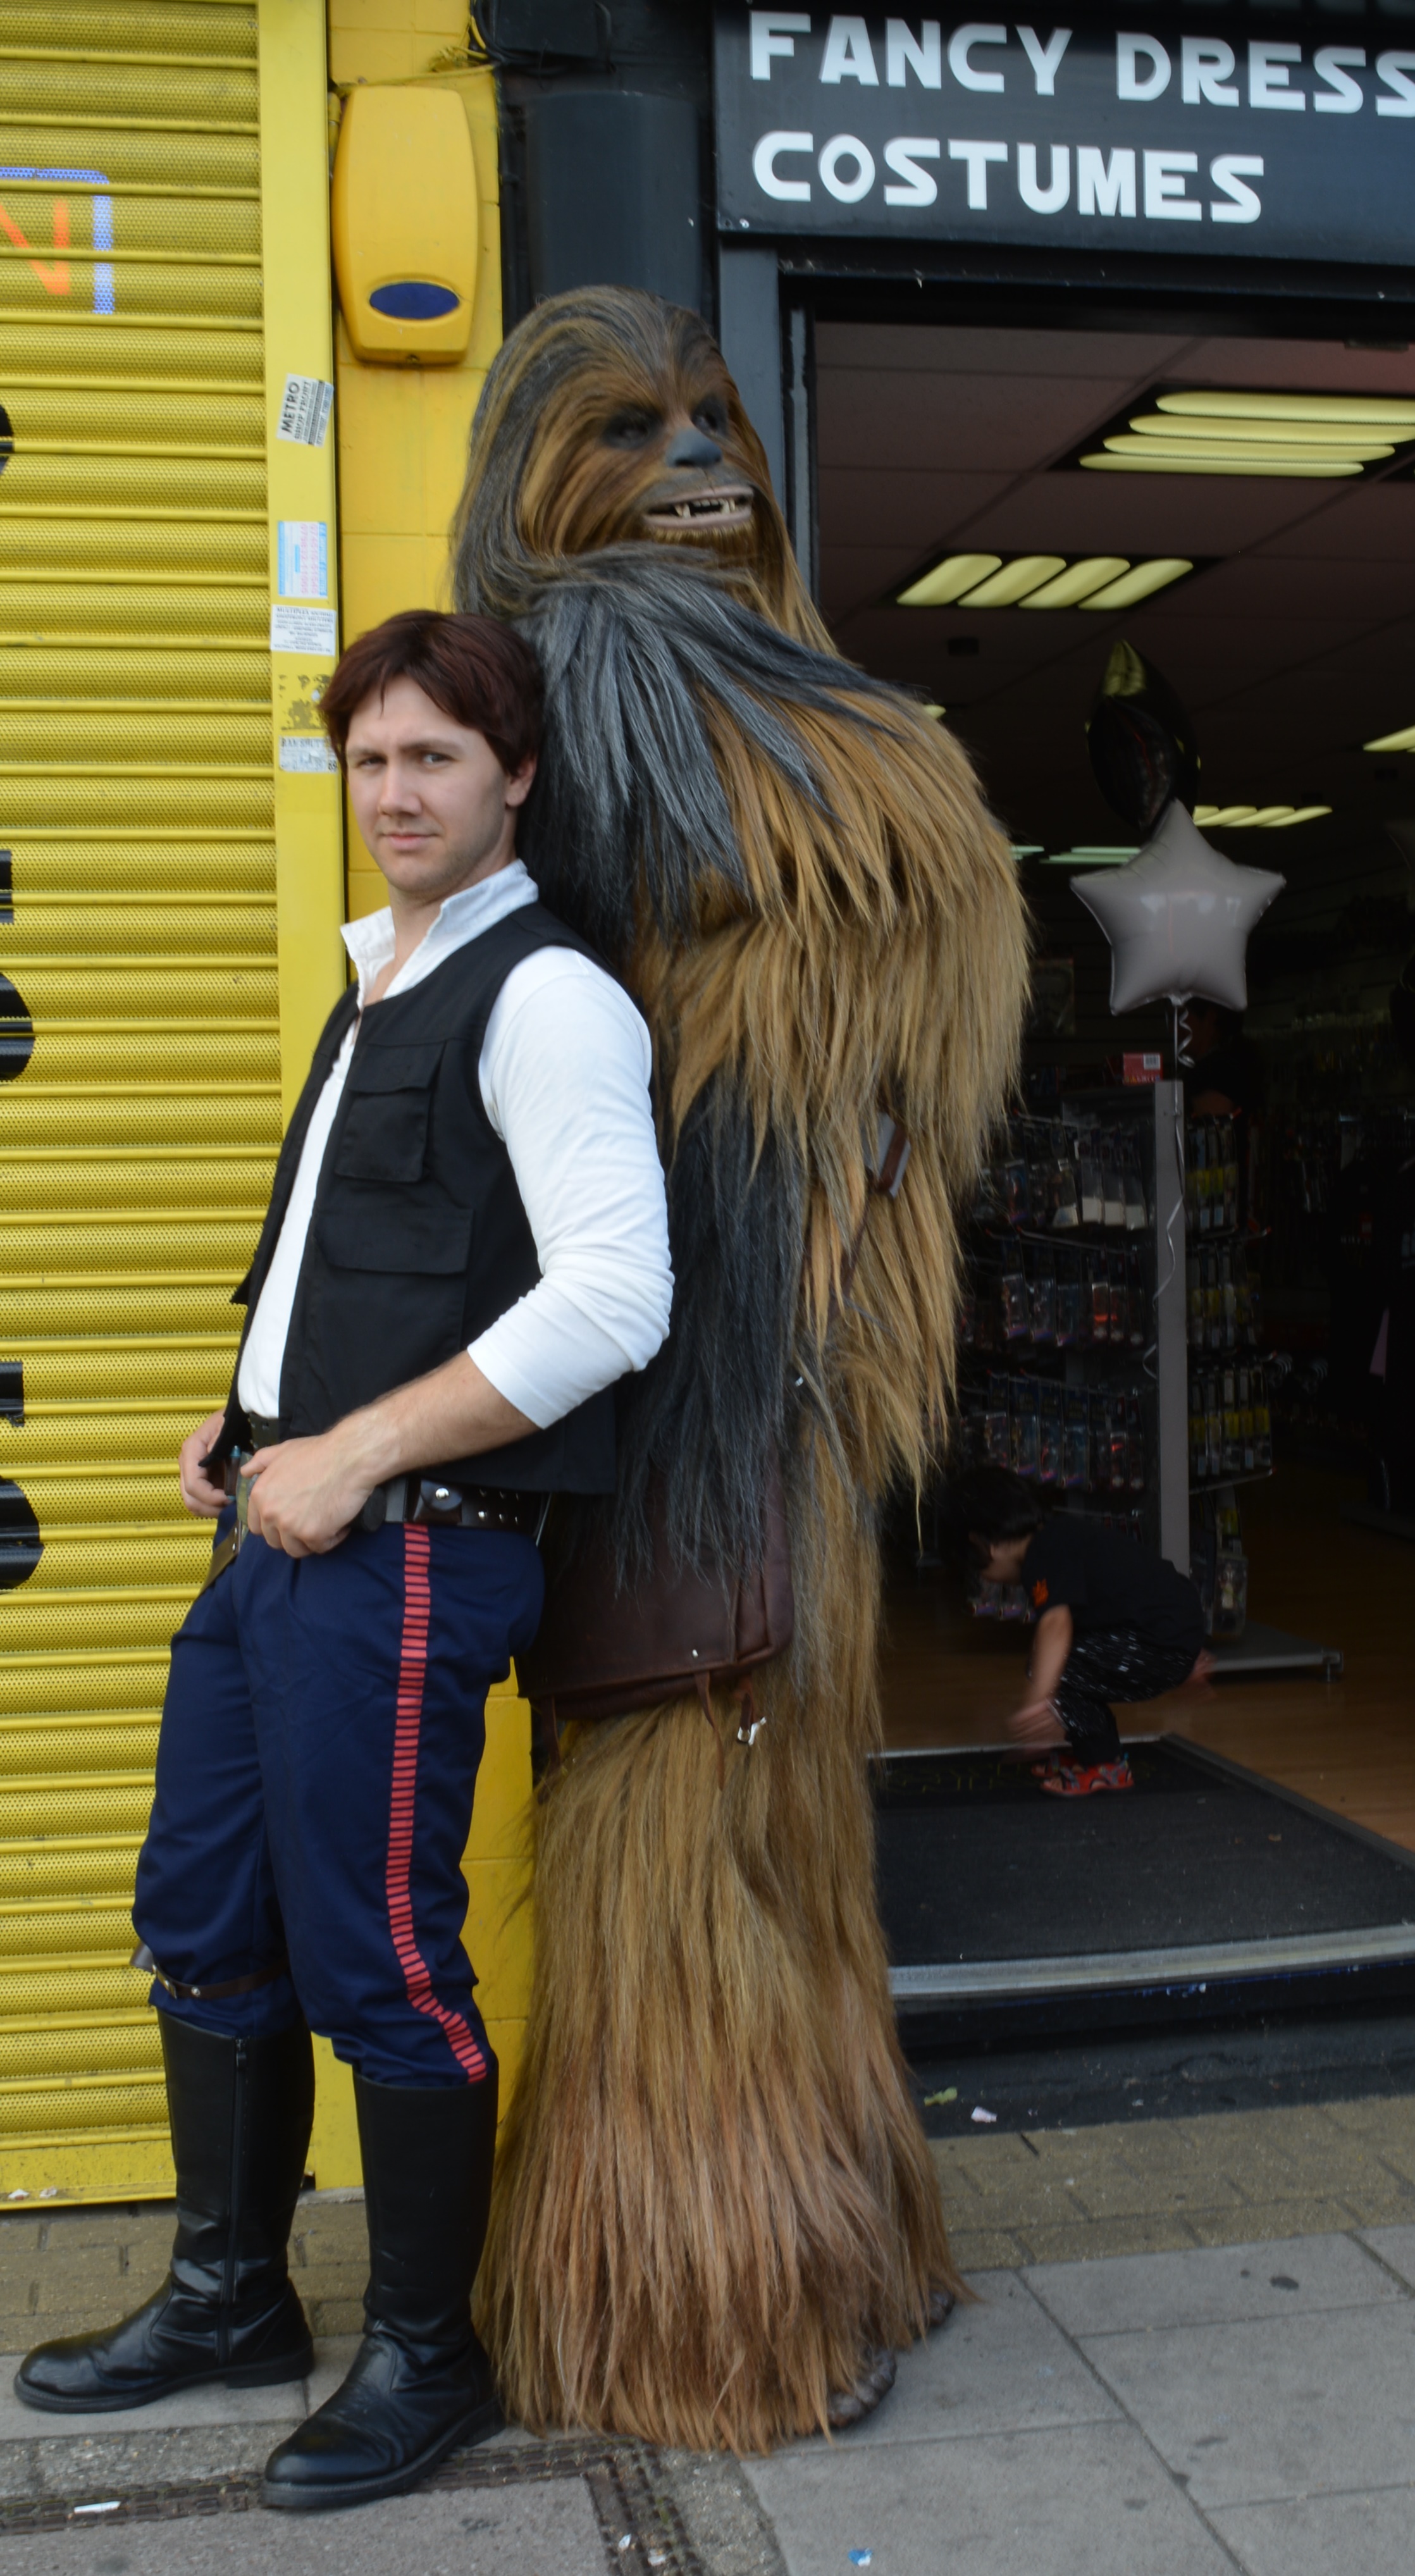 Han Chewbacca Star Wars Shop Fun Day